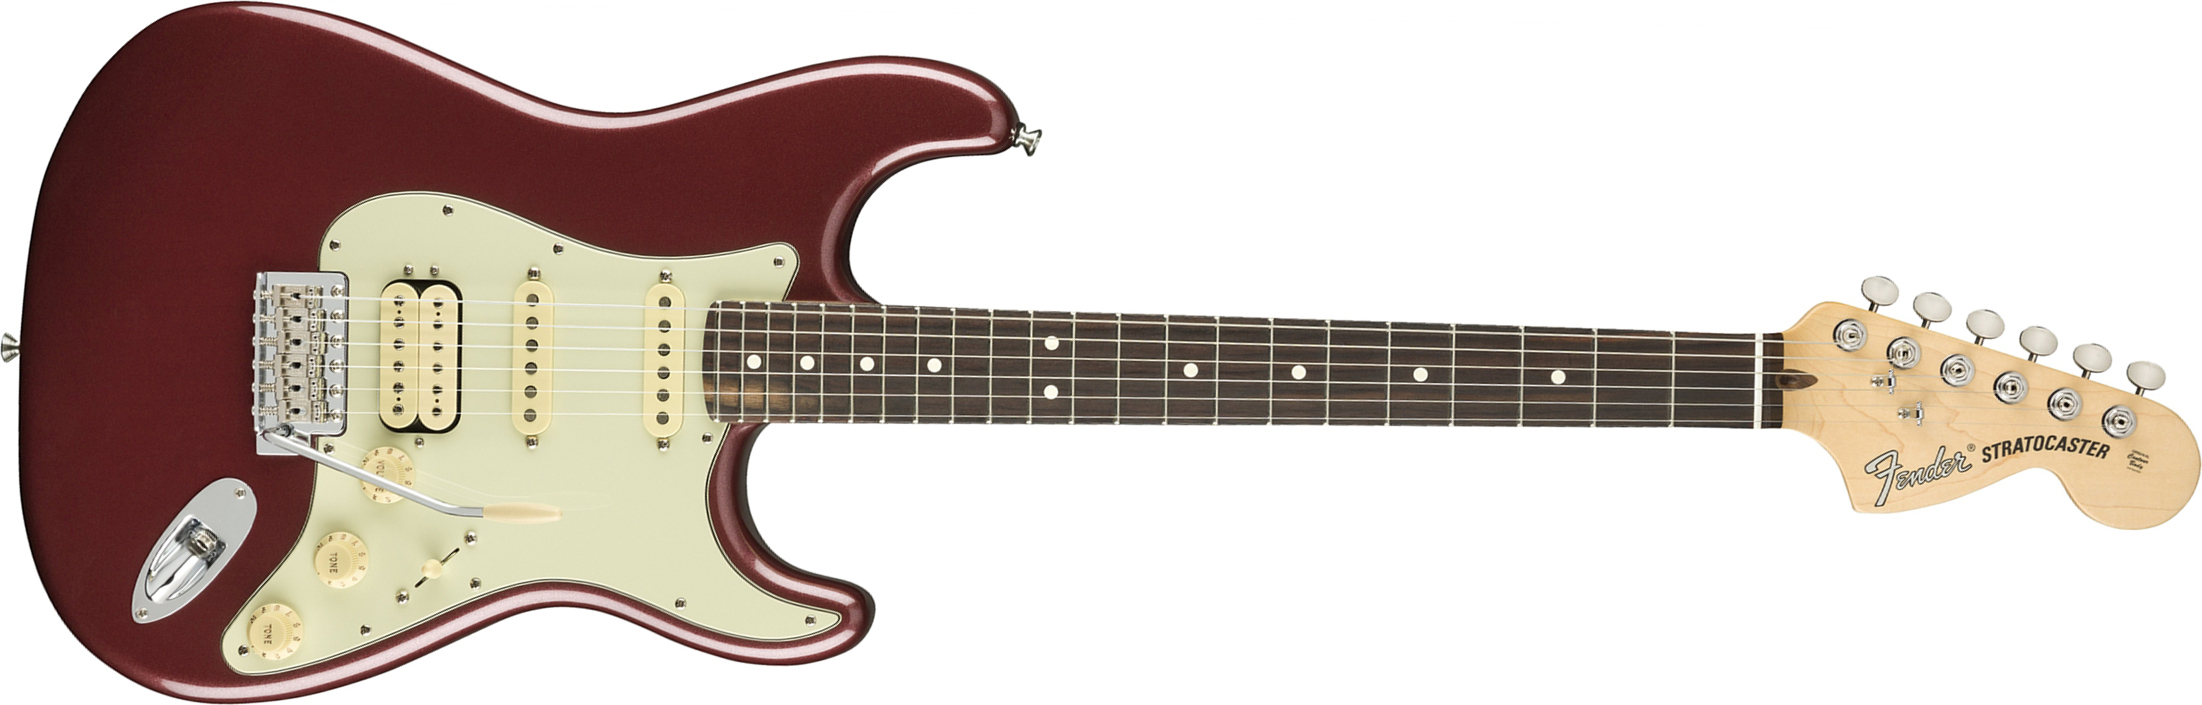 Fender Strat American Performer Usa Hss Rw - Aubergine - Elektrische gitaar in Str-vorm - Main picture